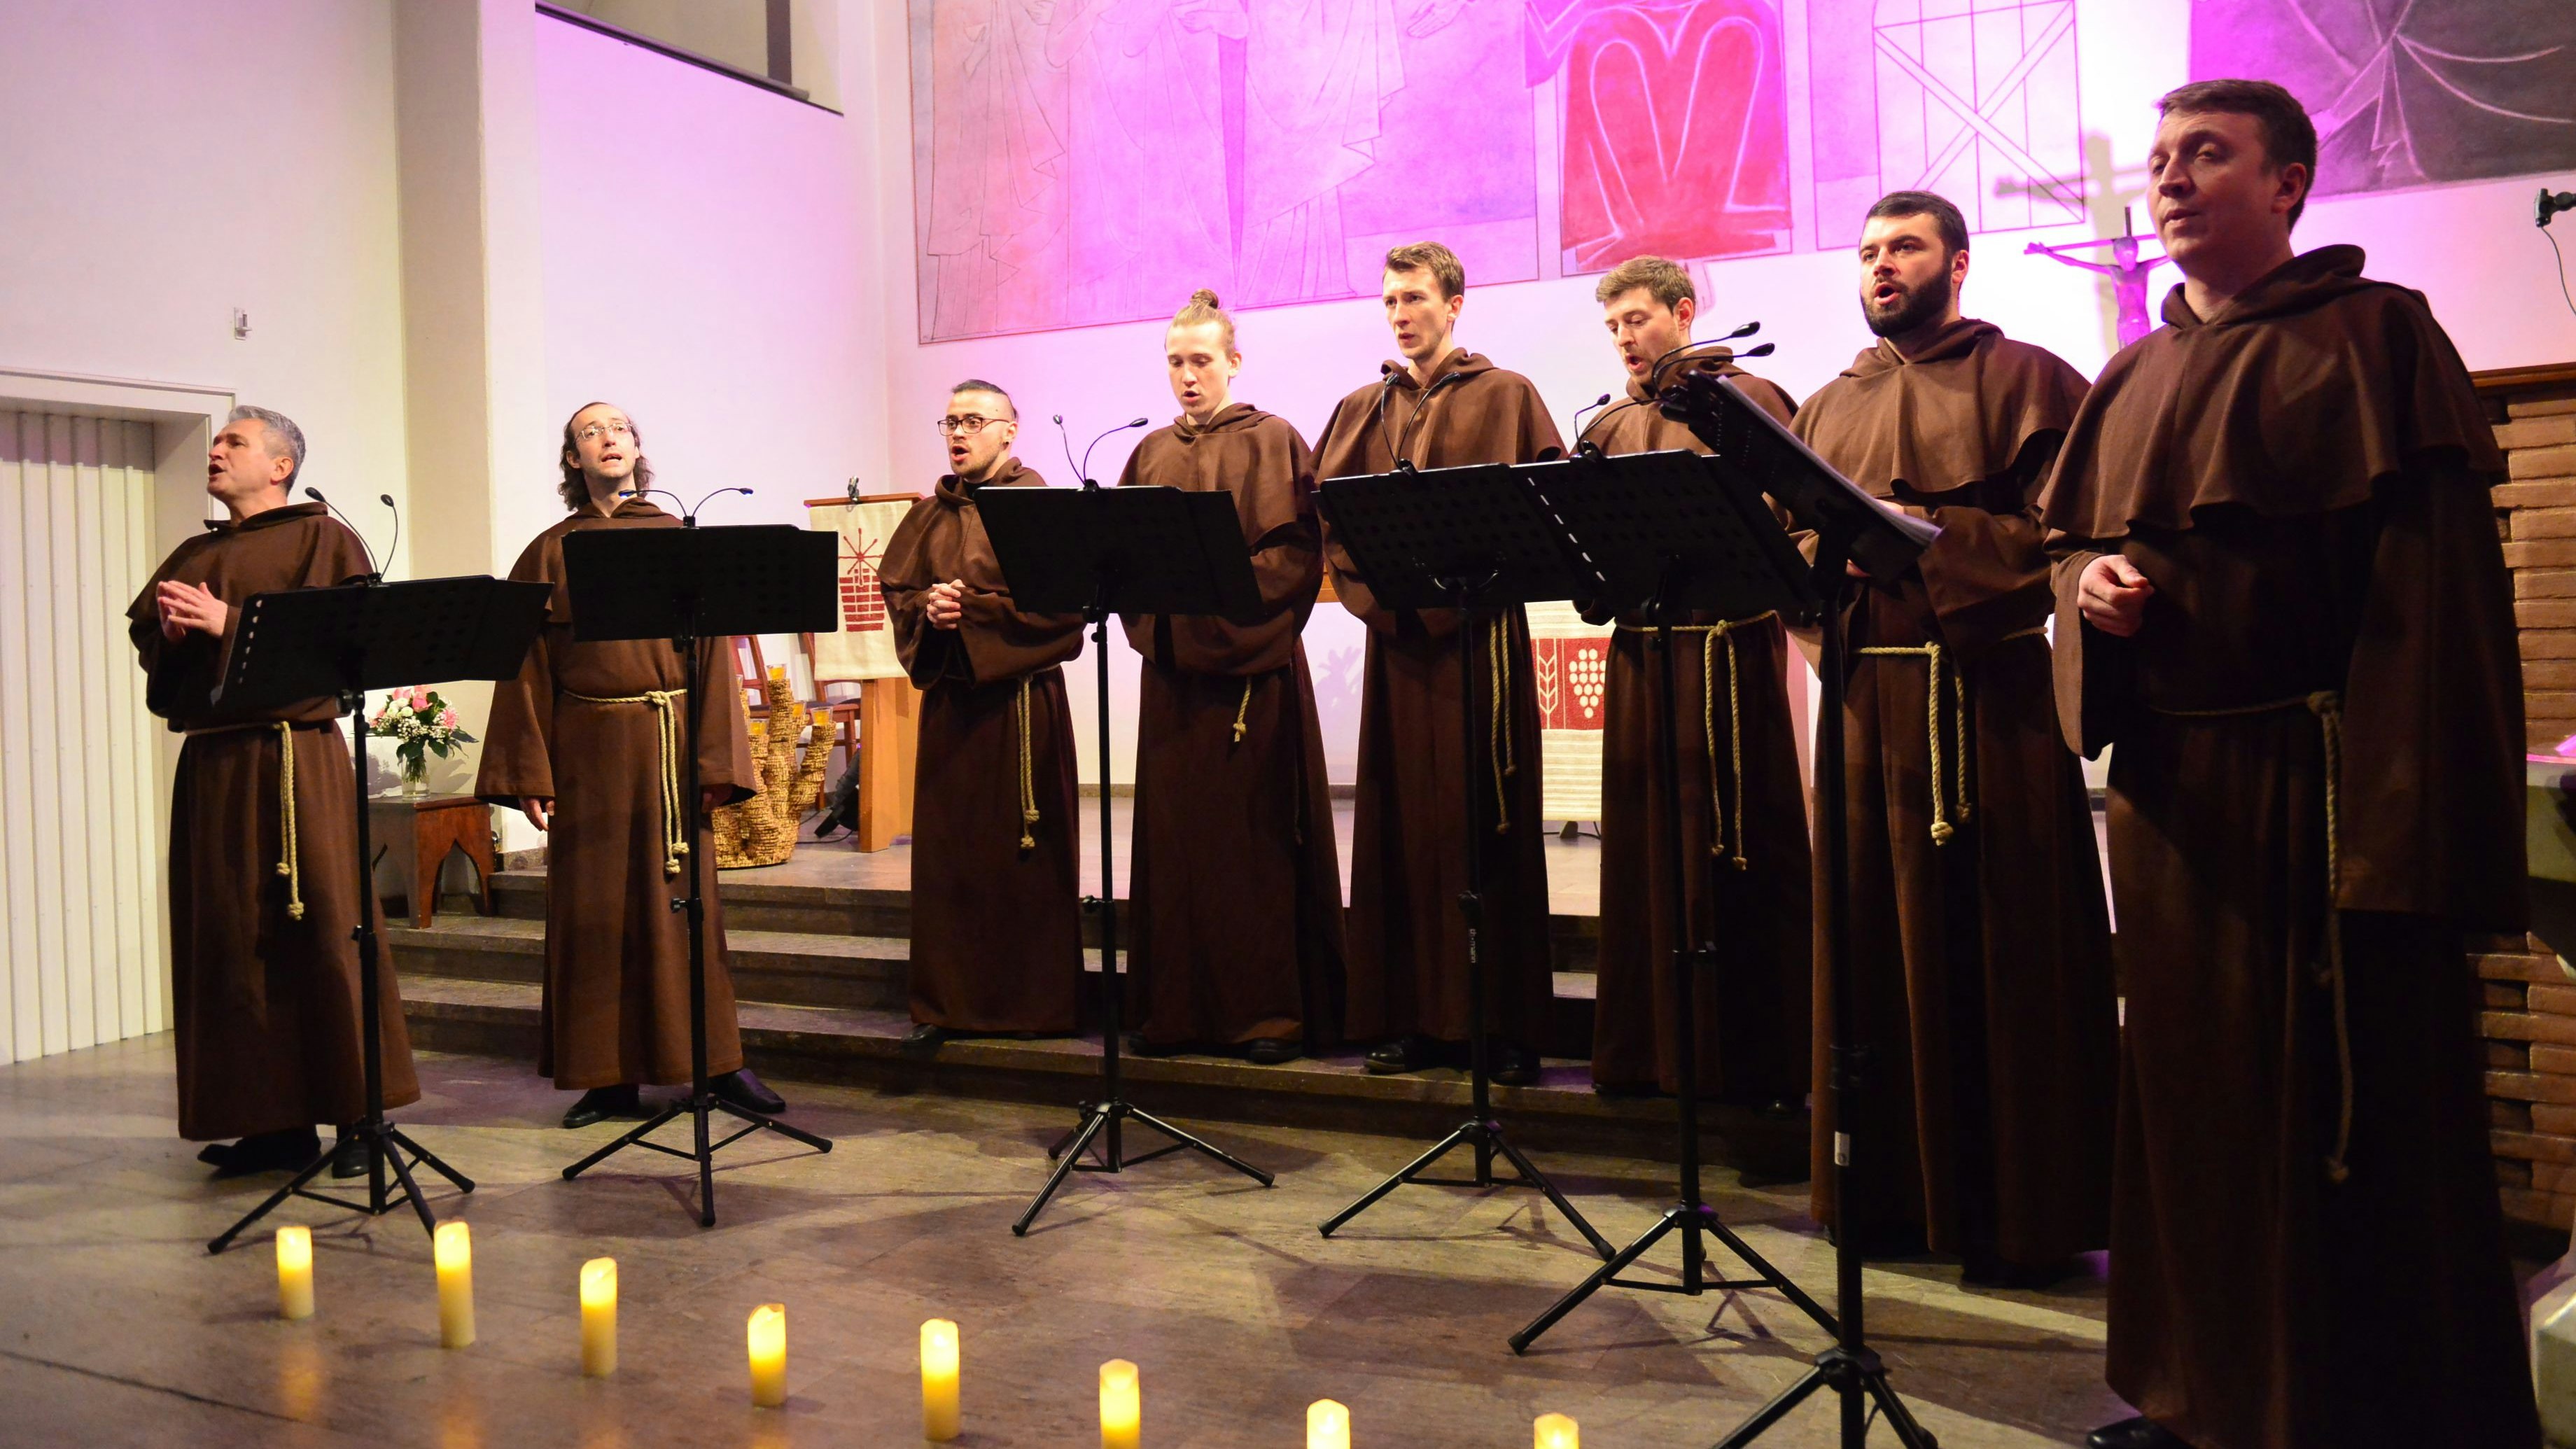 Klangvolle Eindrücke: Die "Gregorian Voices" gastierten in der Evangelischen Kirche in Cloppenburg.&nbsp; &nbsp;Foto: Heidkamp